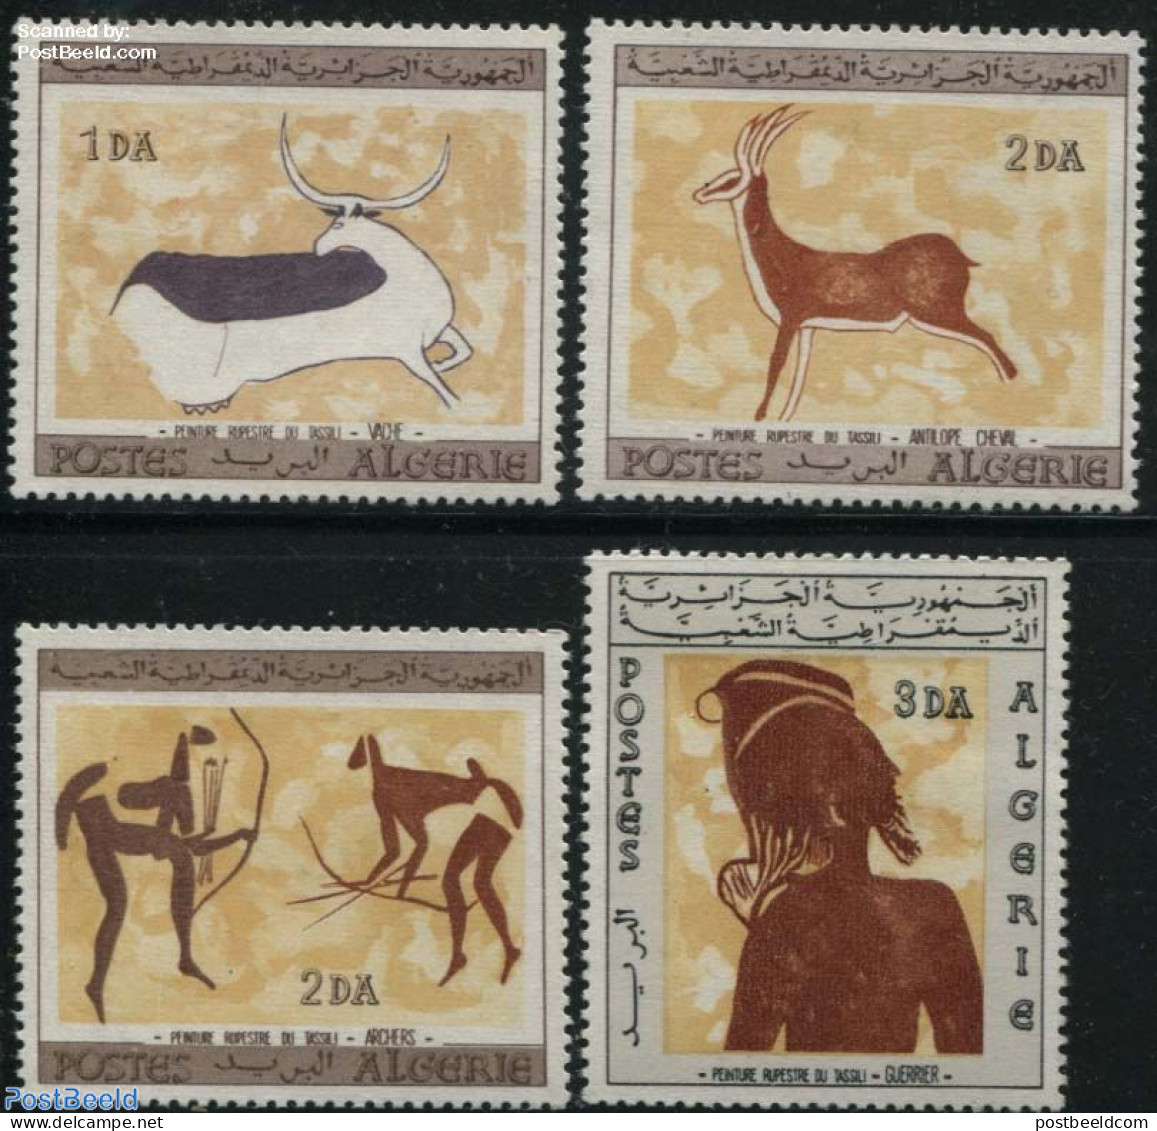 Algeria 1967 Tassili Rock Paintings 4v, Mint NH, Art - Cave Paintings - Unused Stamps